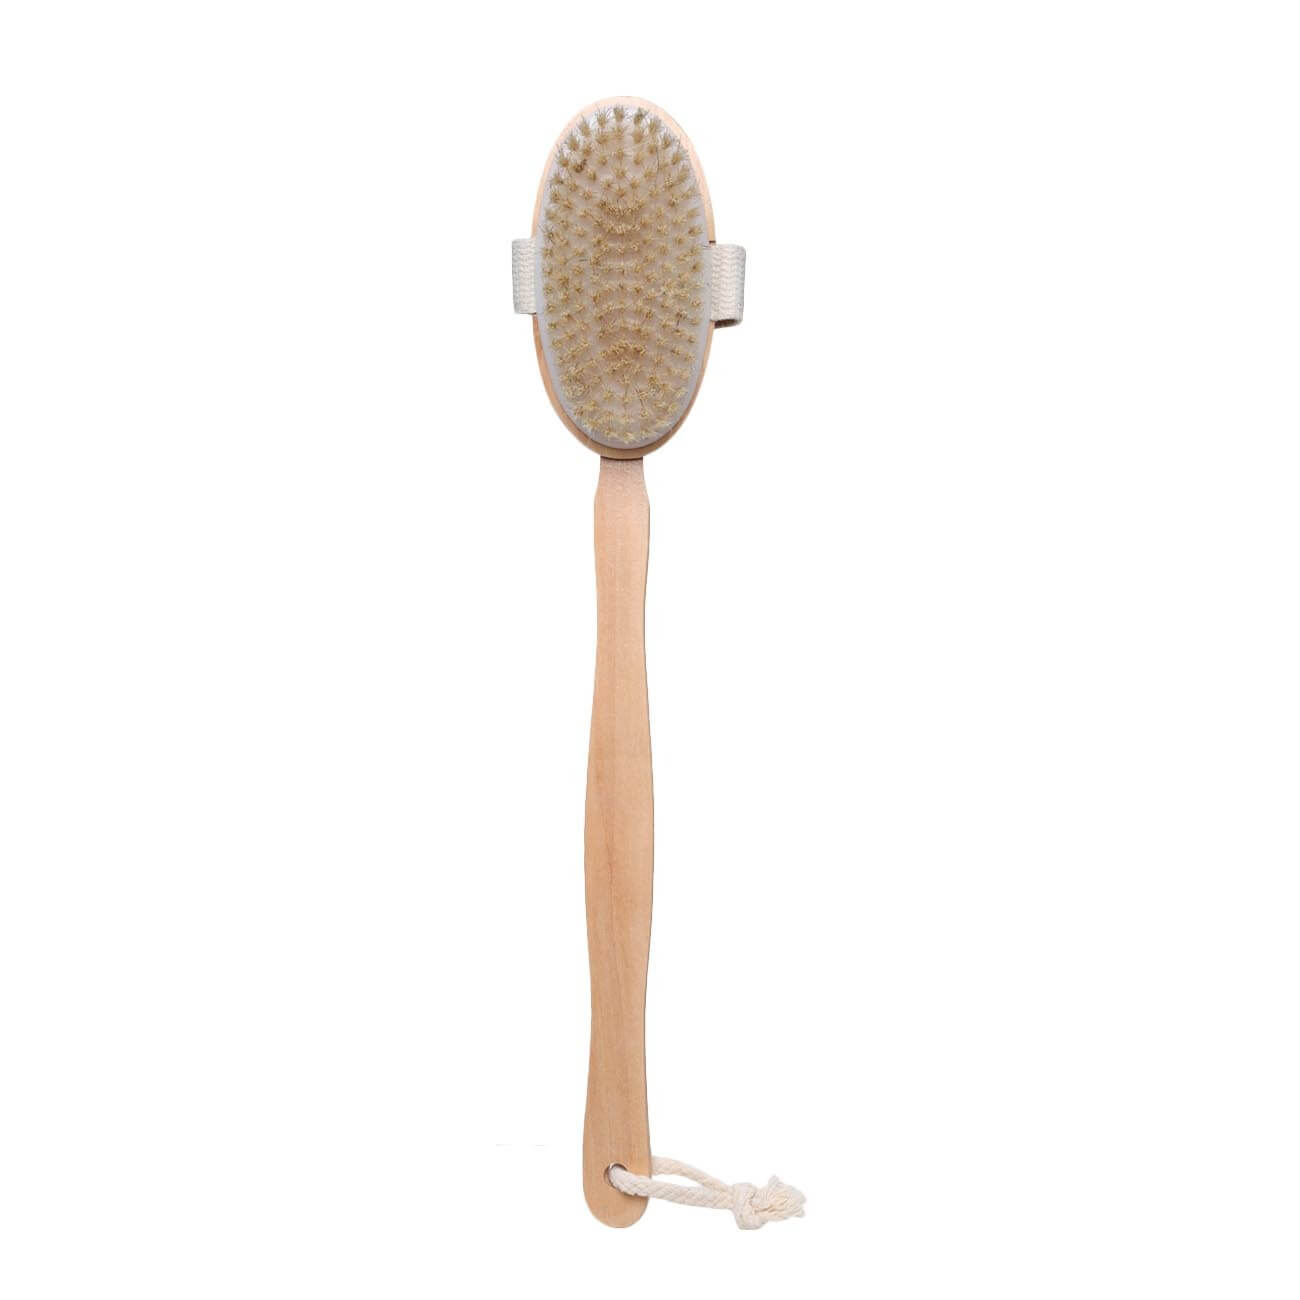 Щетка для сухого массажа, 40 см, с держателем, дерево/нейлон, Bamboo spa ложка гарнирная нейлон